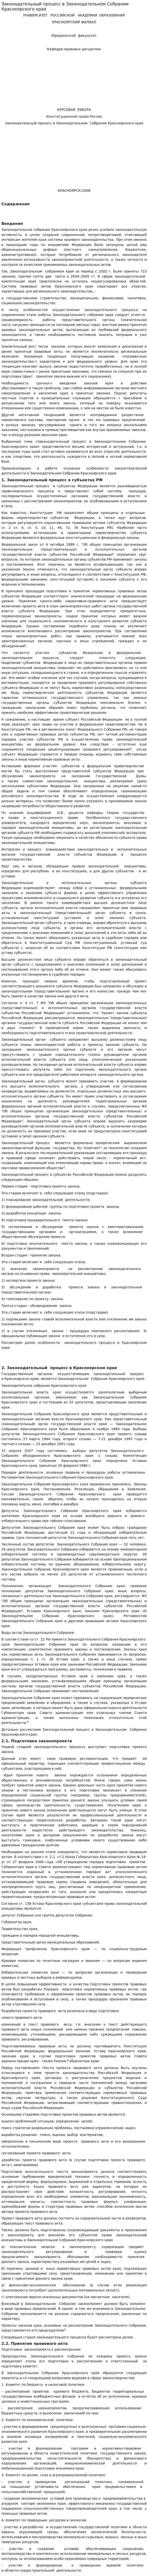 Законодательный процесс в Законодательном Собрании Красноярского края